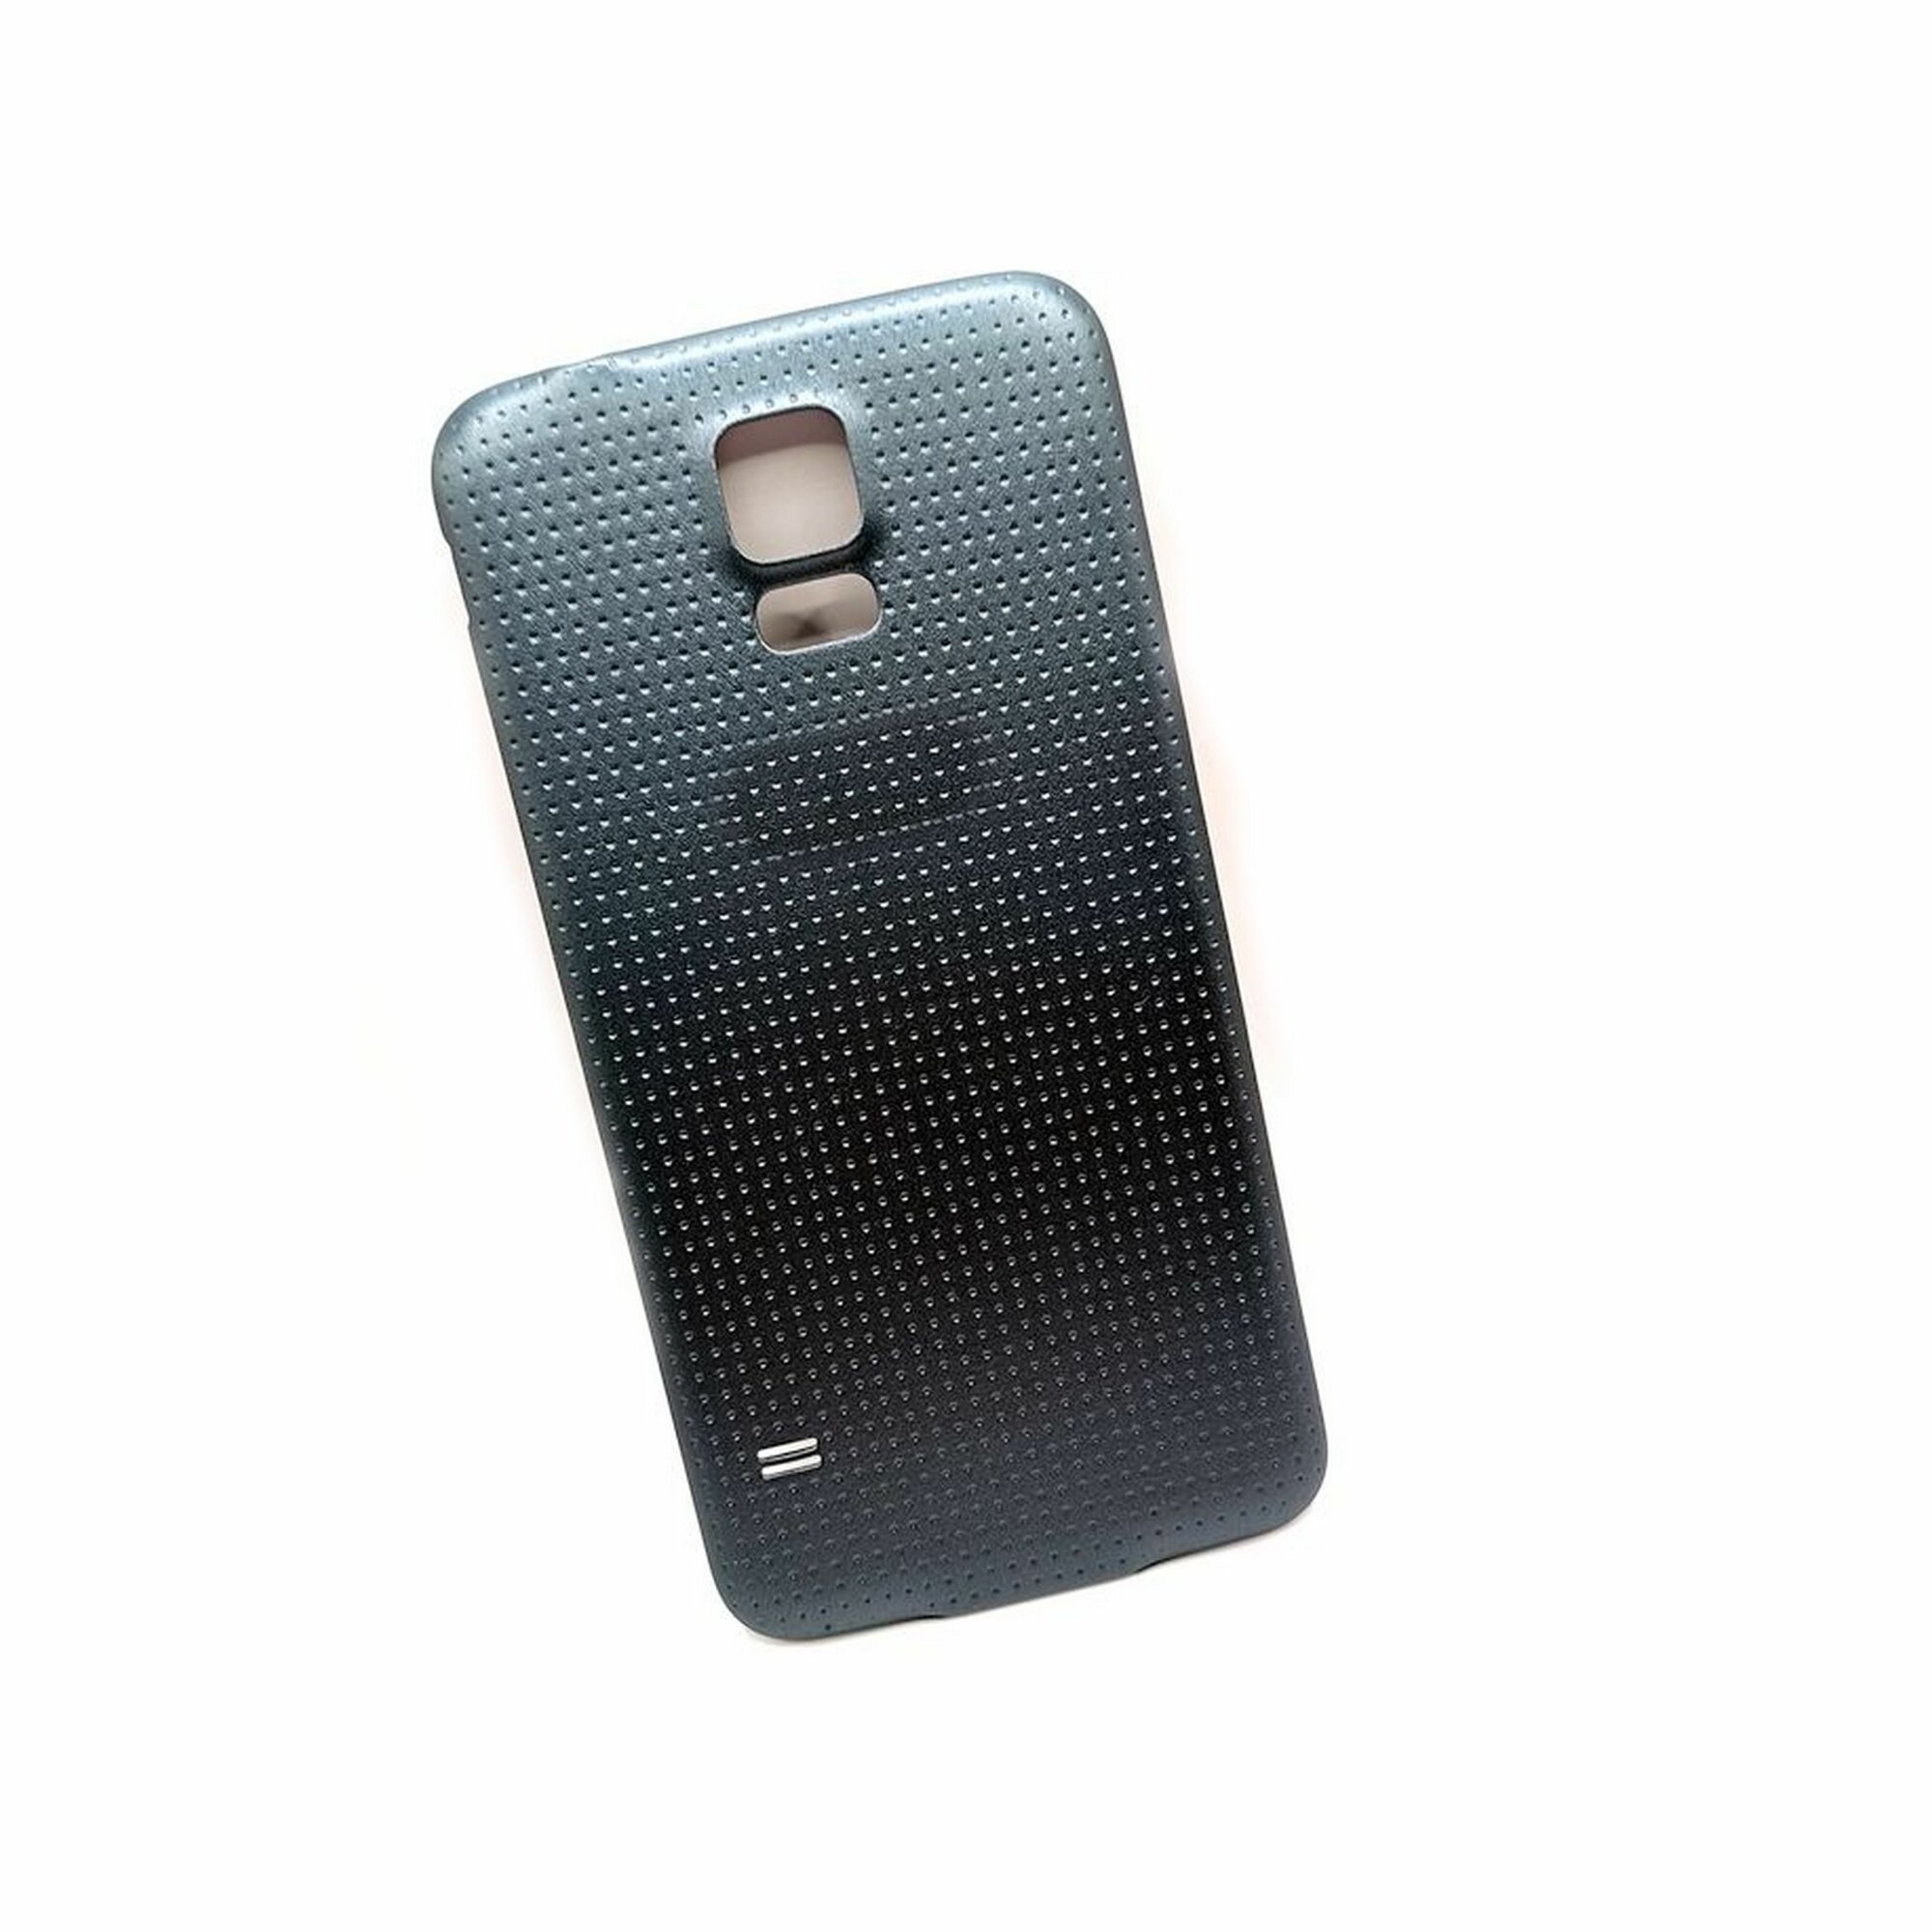 Задняя крышка (корпус) для Samsung Galaxy S5 / G900F крышка корпуса Самсунг Галакси S5 (черный)